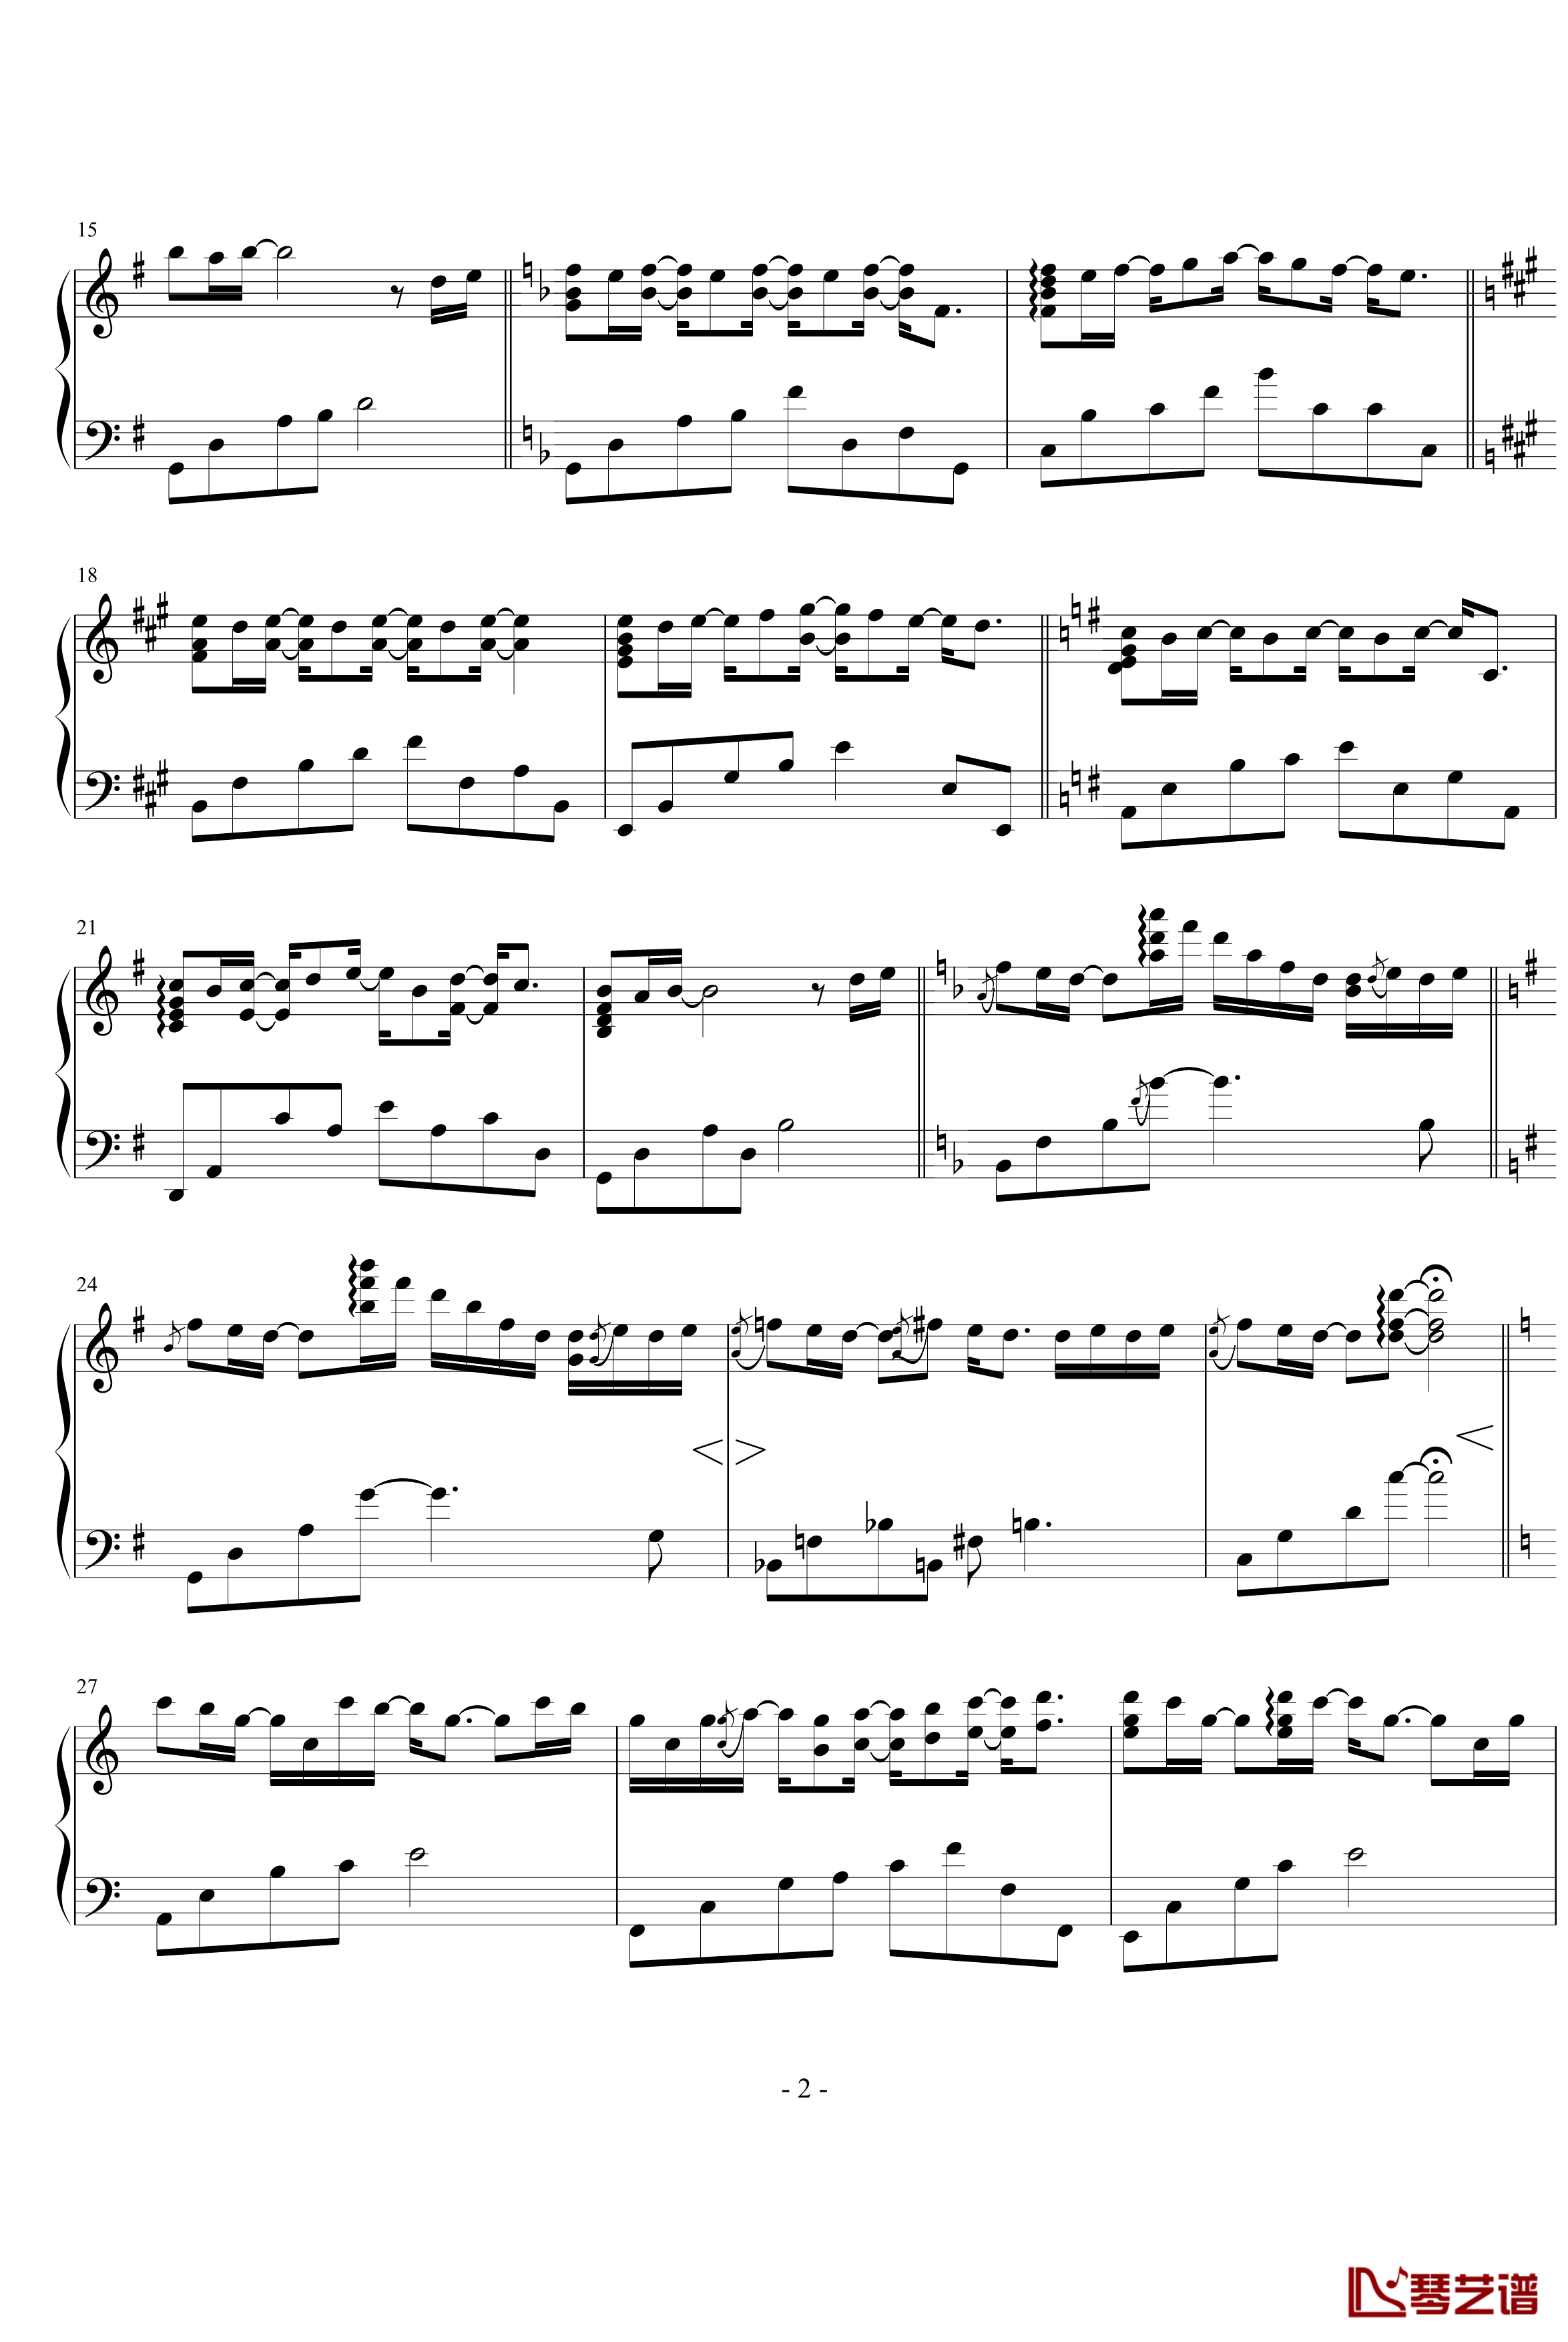 &#039;Til I Find You钢琴谱-Yiruma